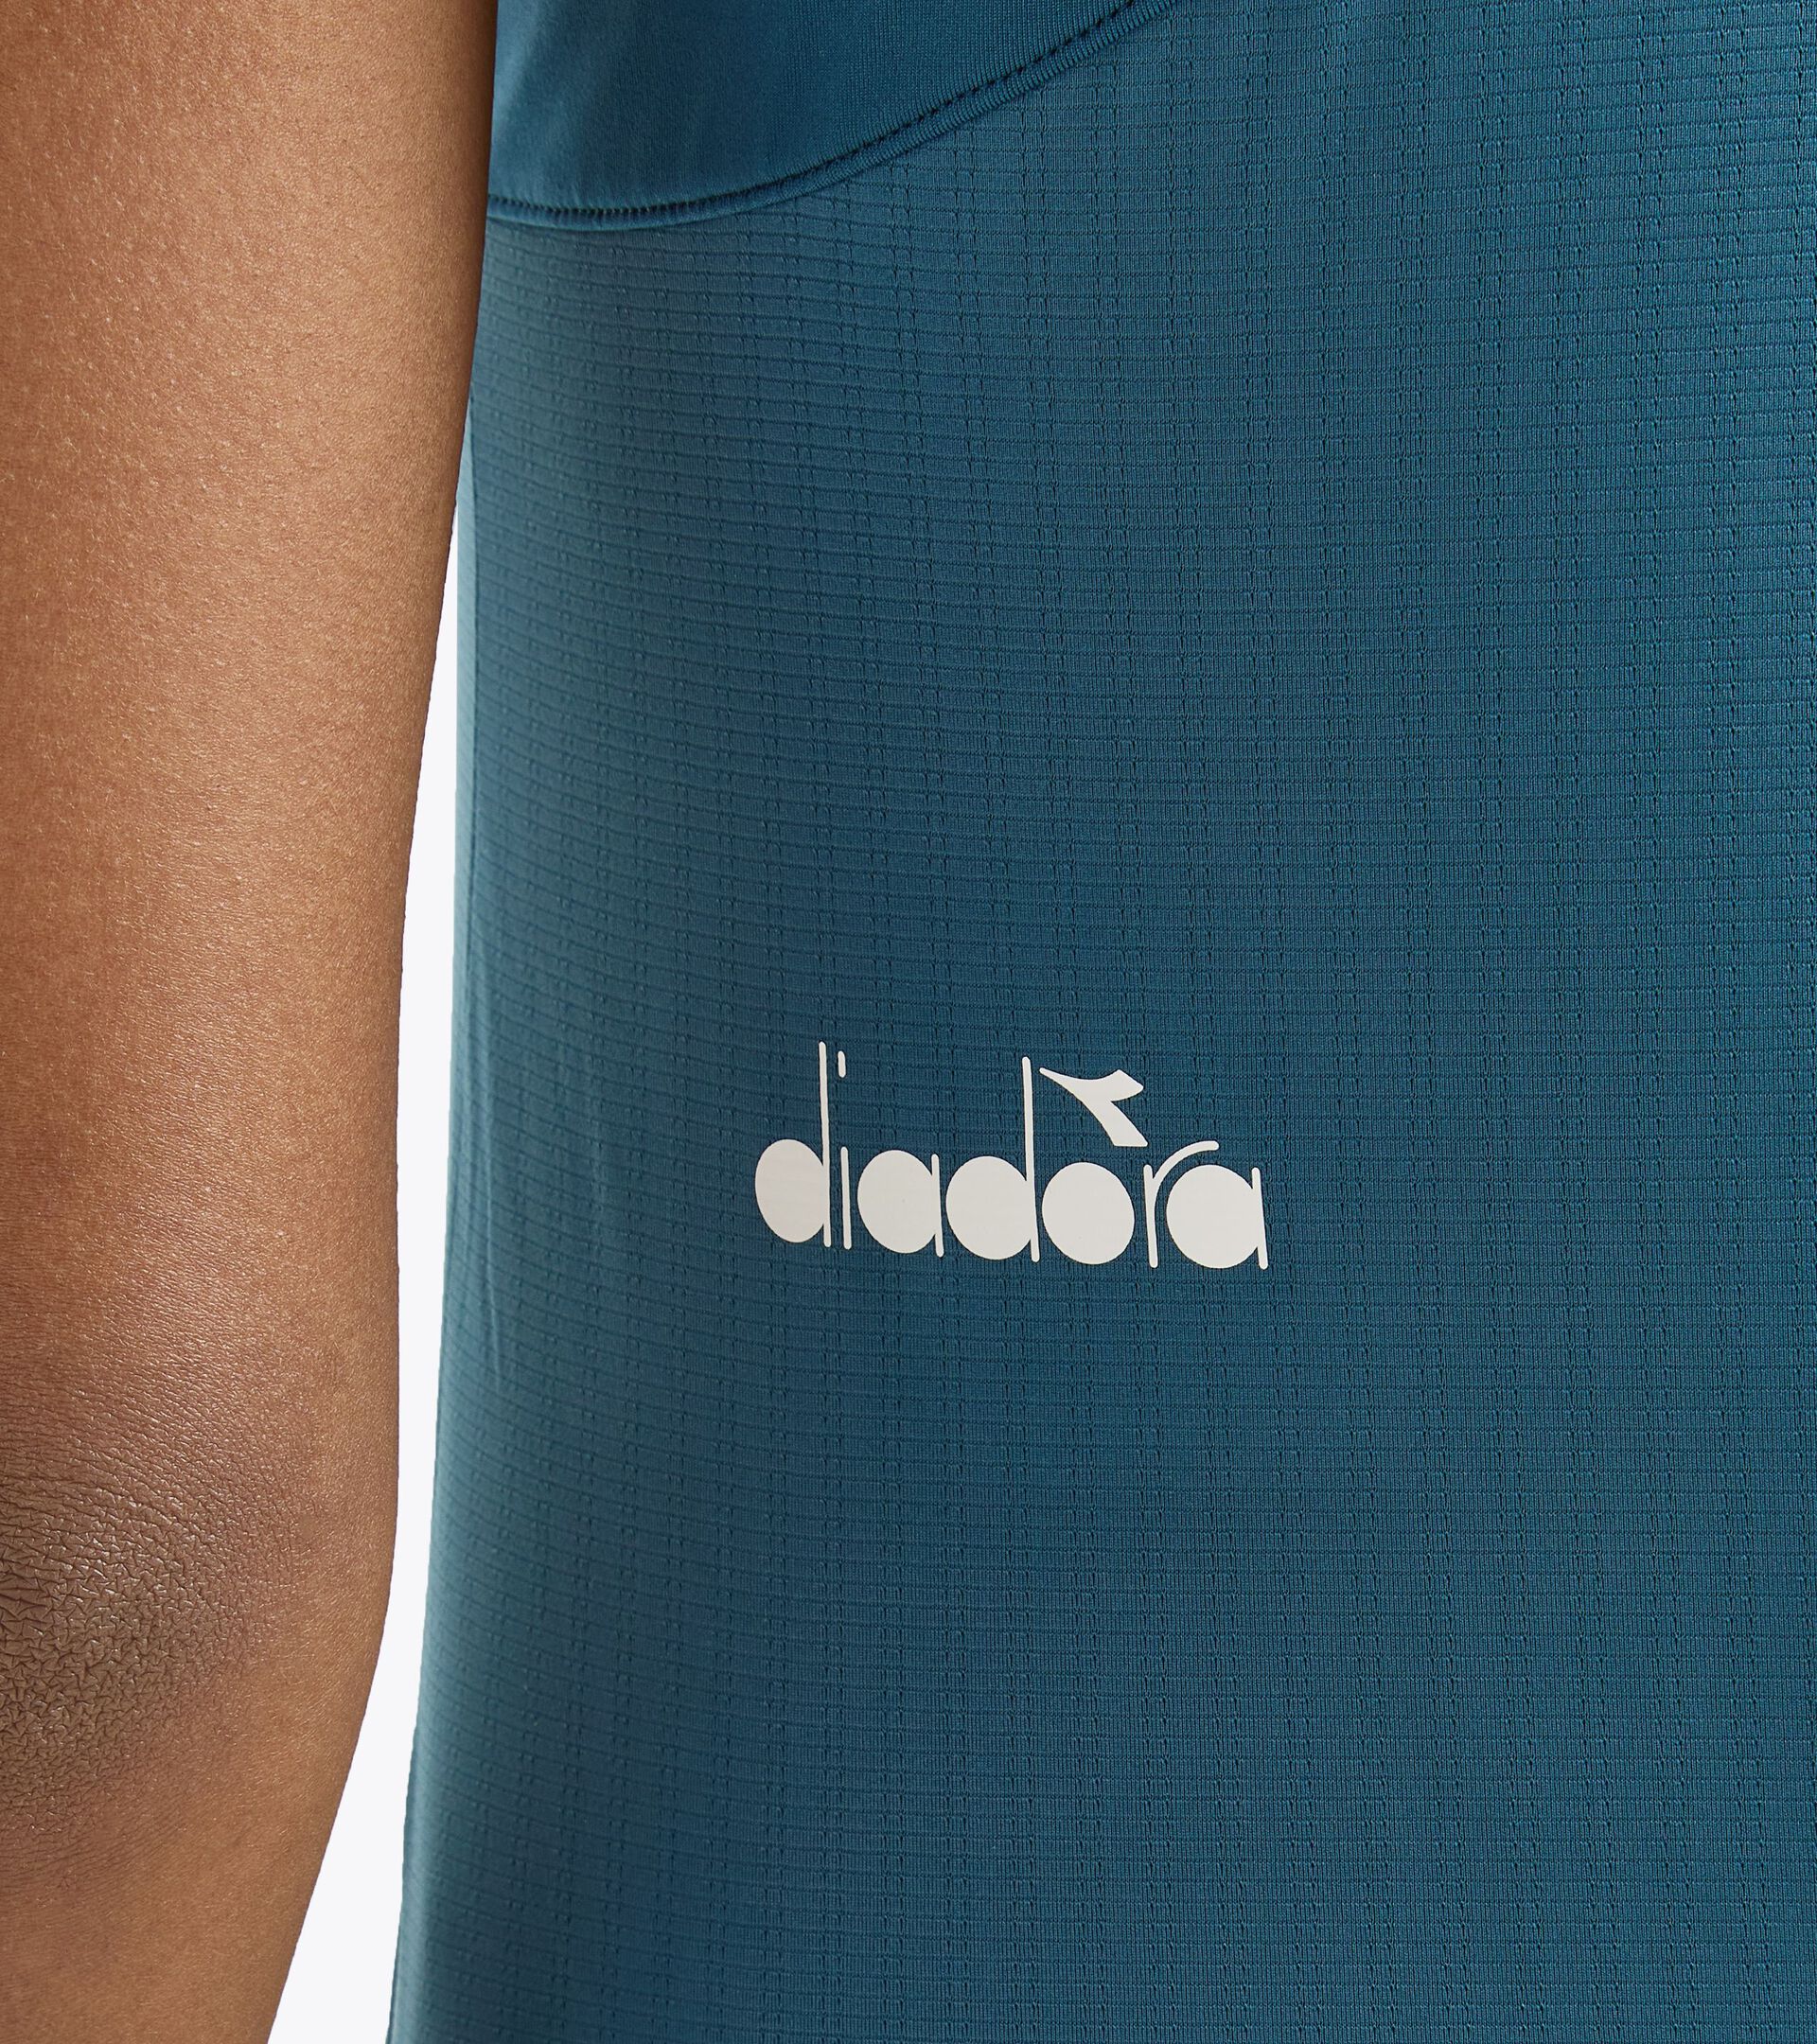 Camiseta sin mangas de tenis con espalda estilo nadadora - Competición - Mujer
 L. TANK ICON AZUL LEGION - Diadora